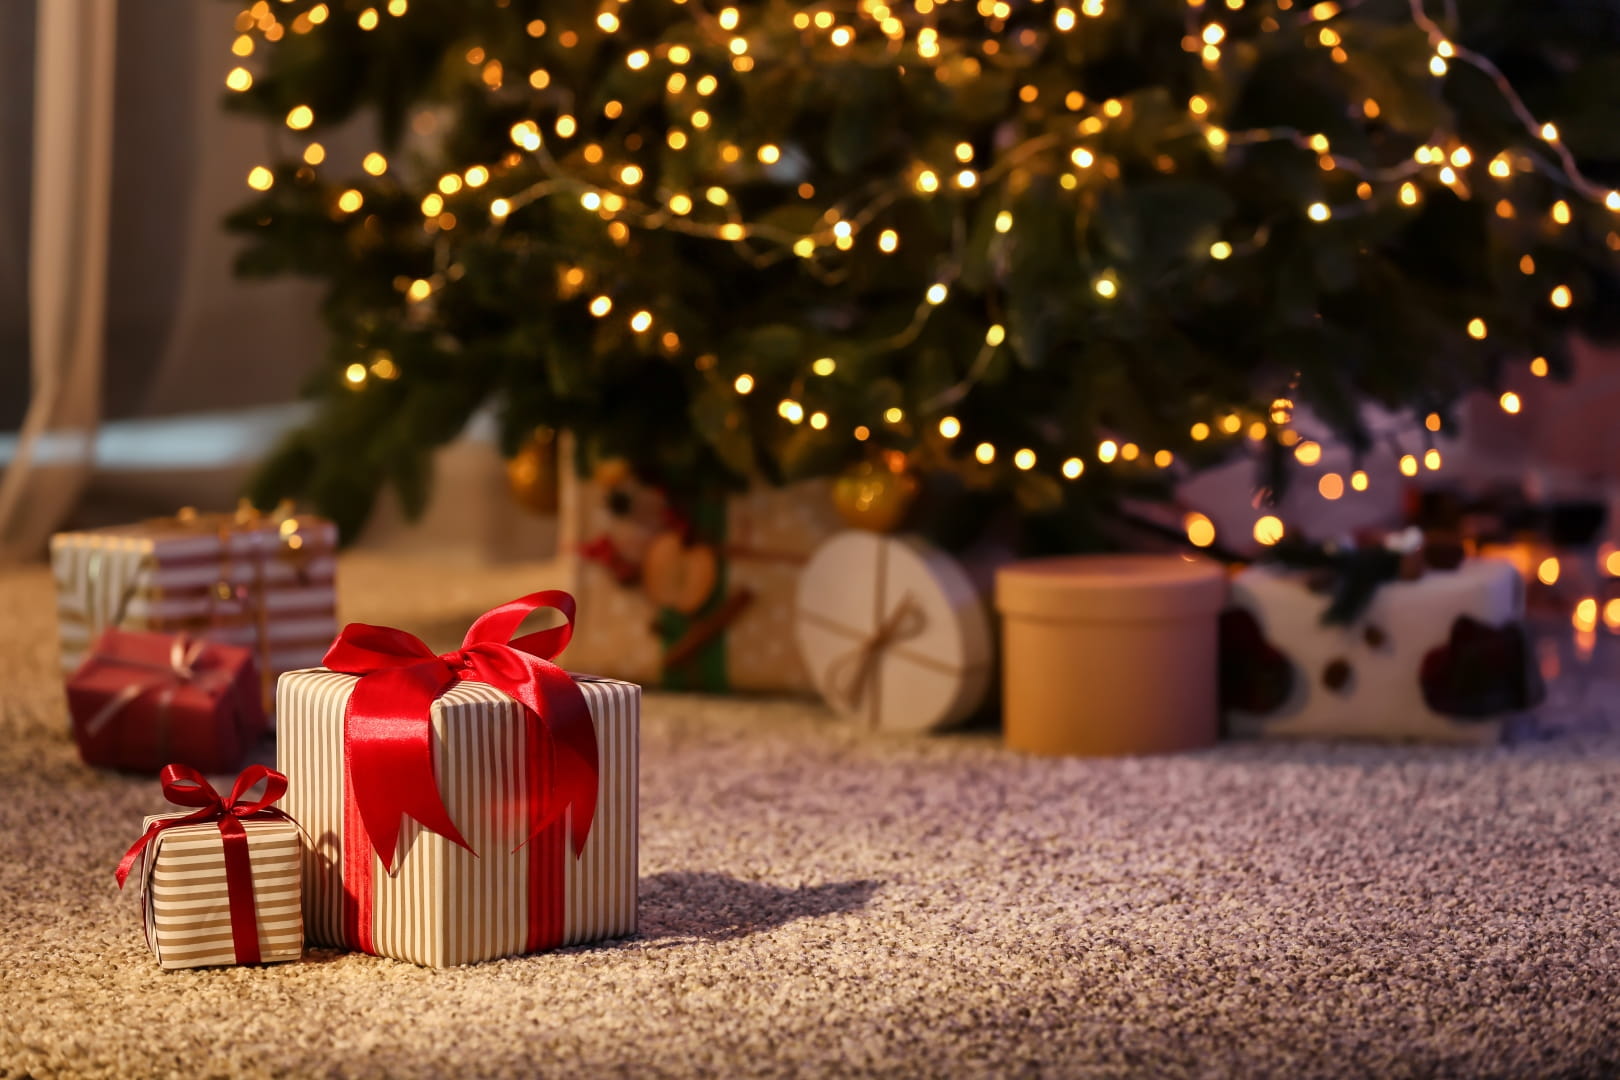 Utilizar luces de bajo consumo en el árbol de Navidad puede suponer un ahorro de hasta el 70%